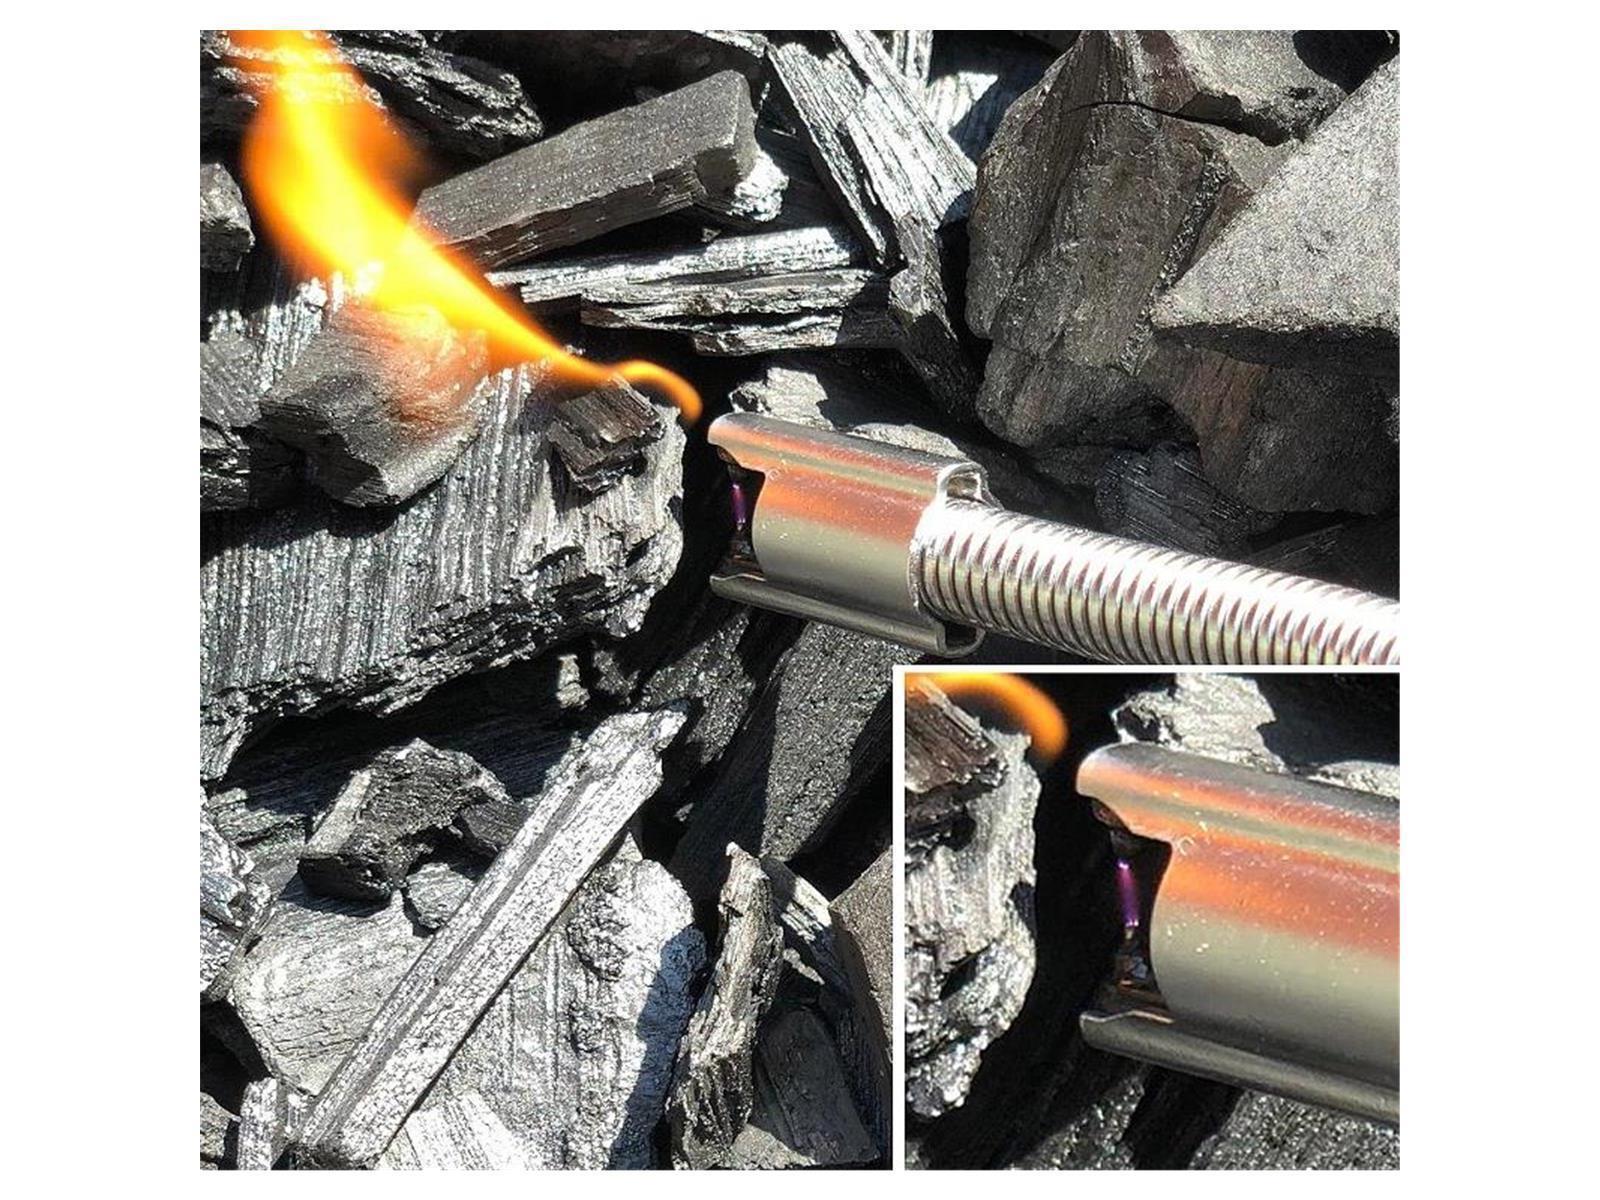 Lichtbogen Stab-Feuerzeug "LSX flex80" aufladbar via USB, toller Kerzenanzünder